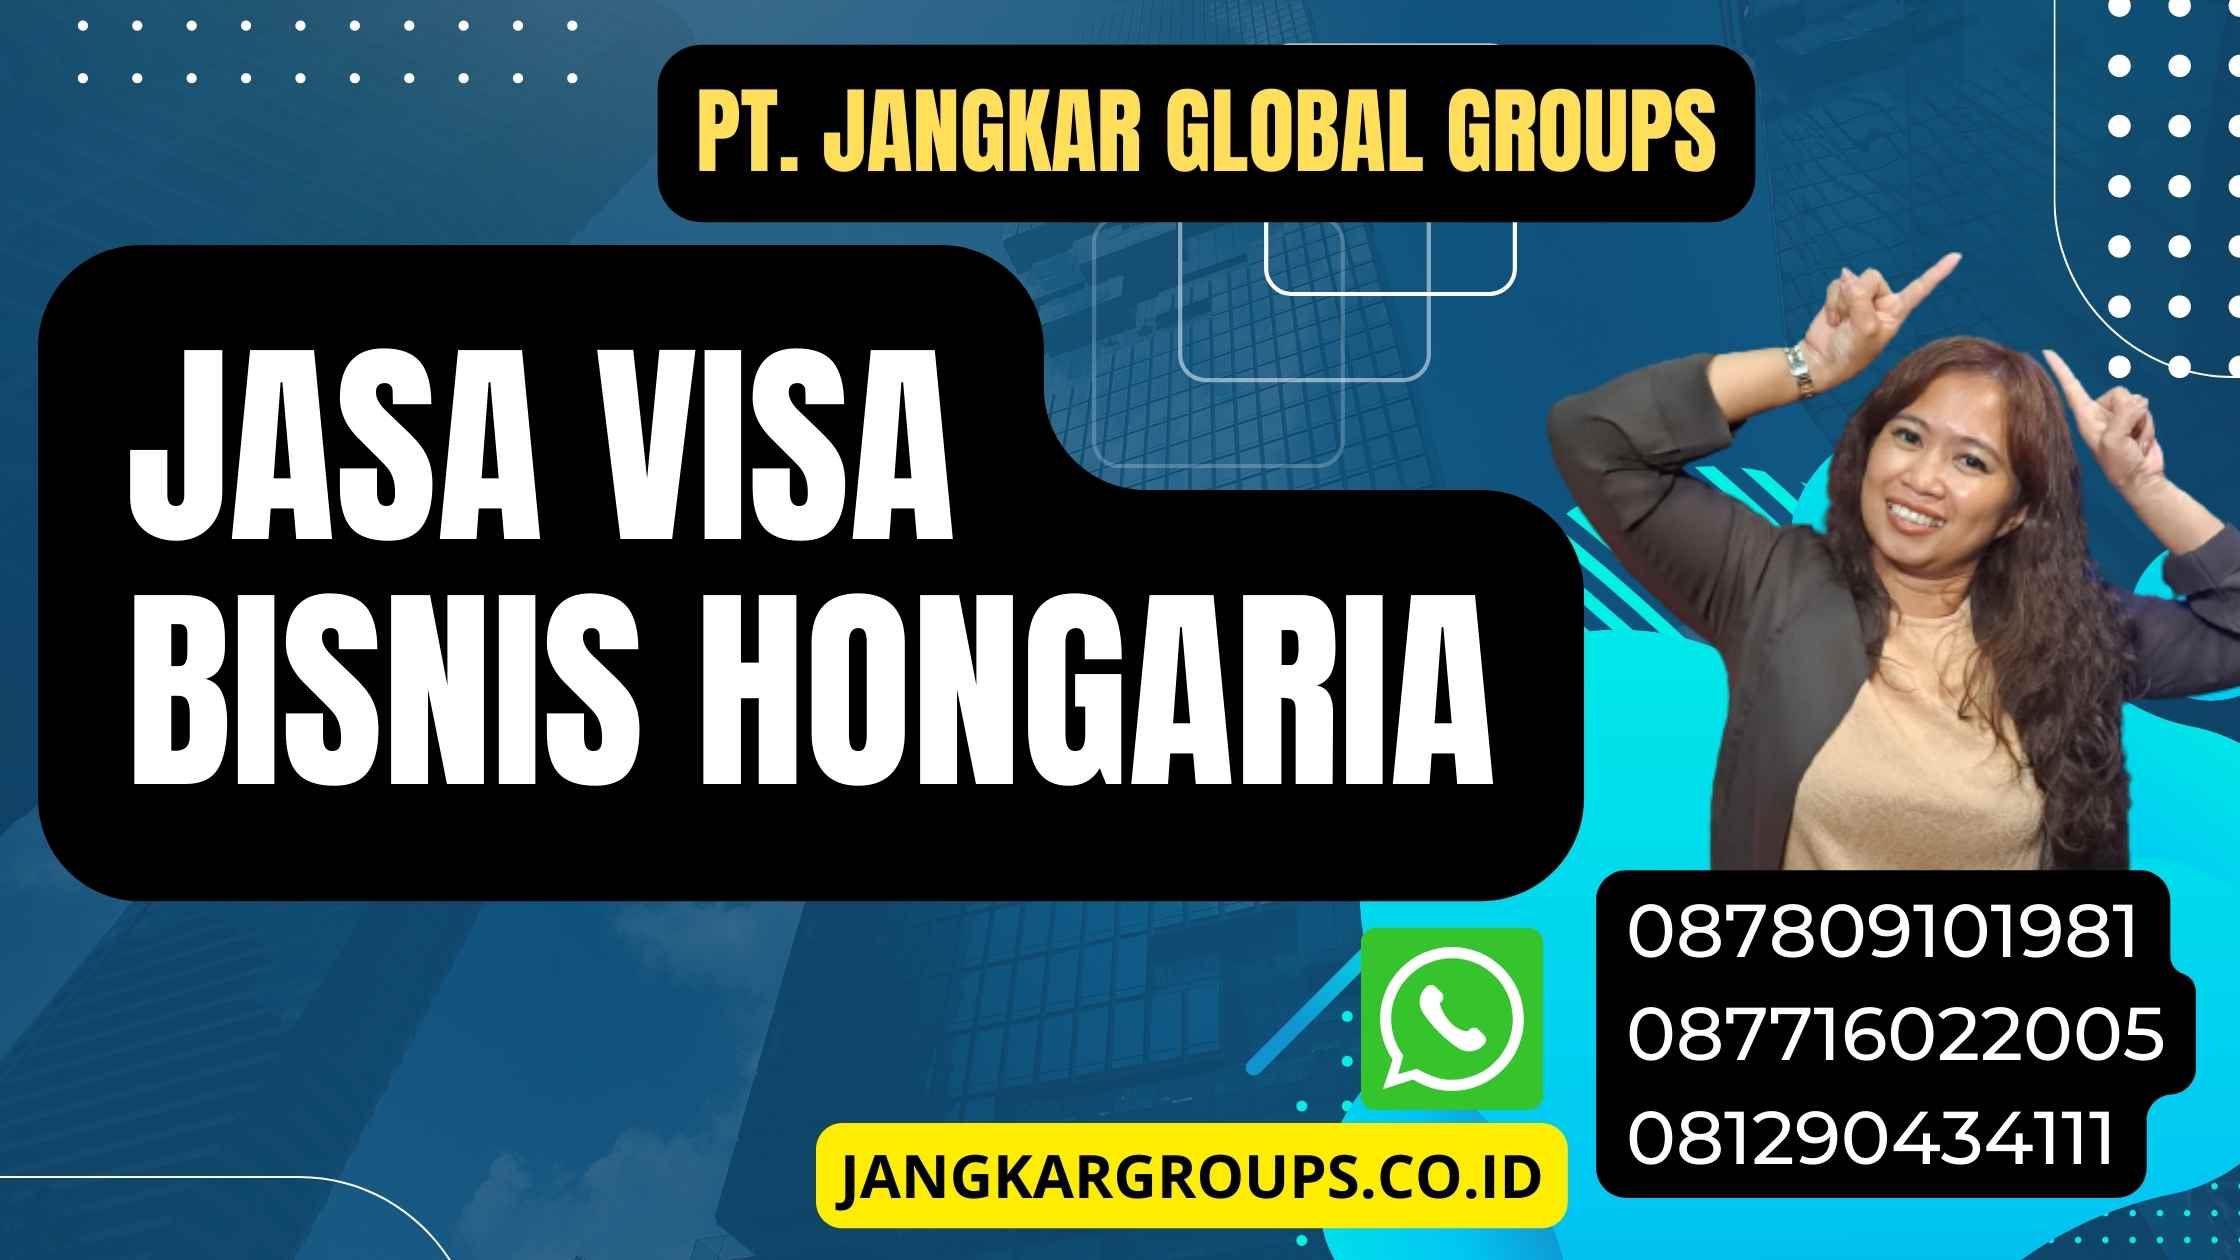 Jasa visa bisnis Hongaria